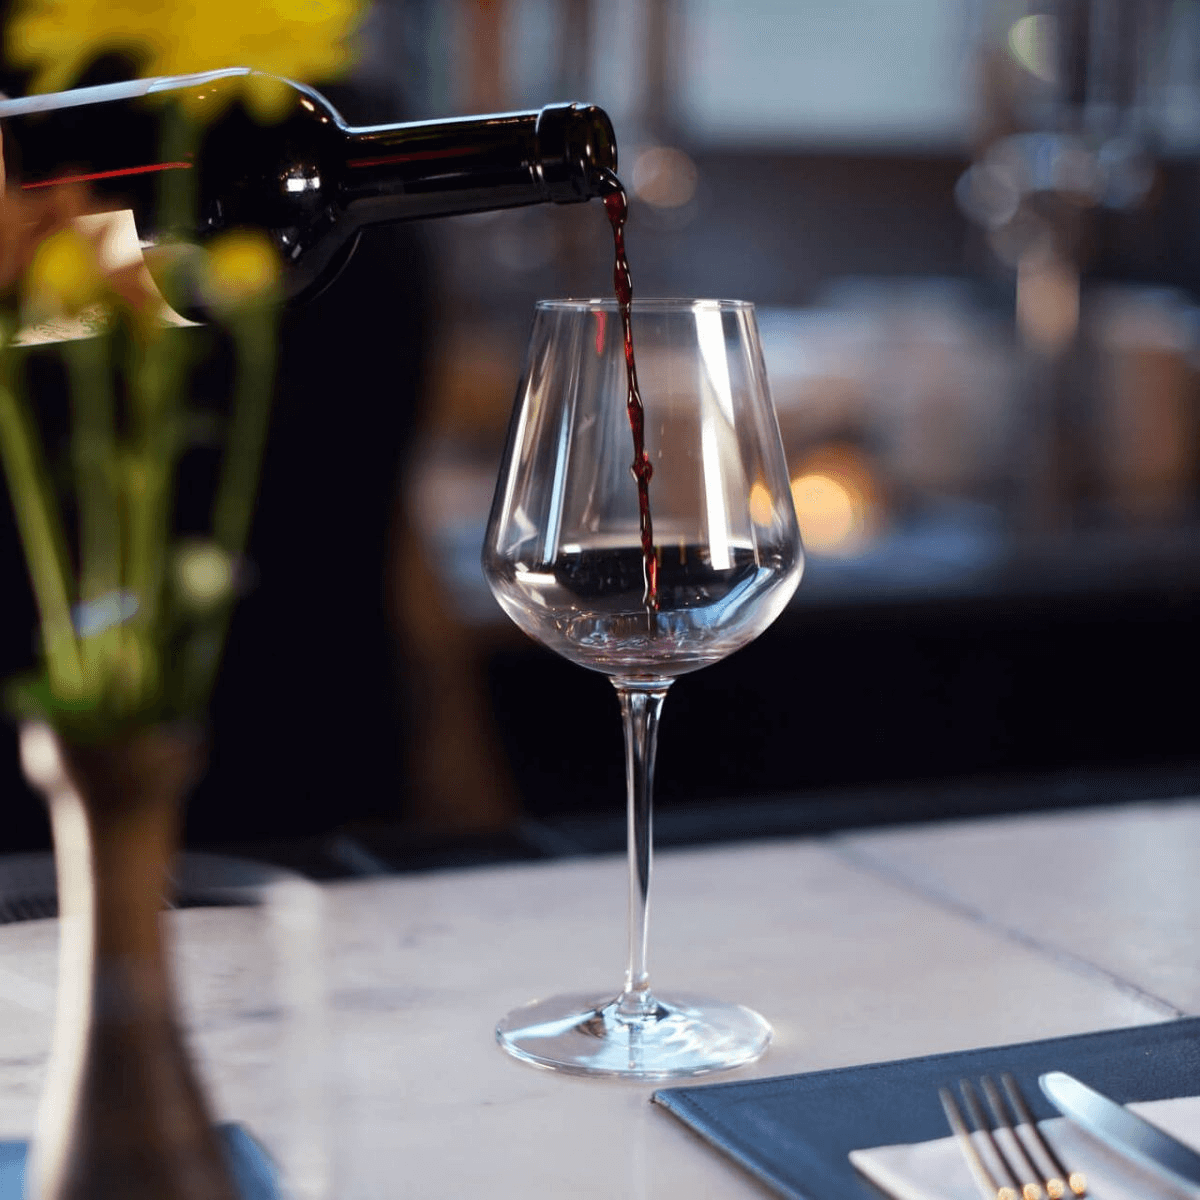 Rượu vang đỏ là loại rượu phổ biến hàng đầu và ly đựng rượu vang đỏ được coi là hình mẫu tiêu chuẩn cho các loại ly đựng rượu khác